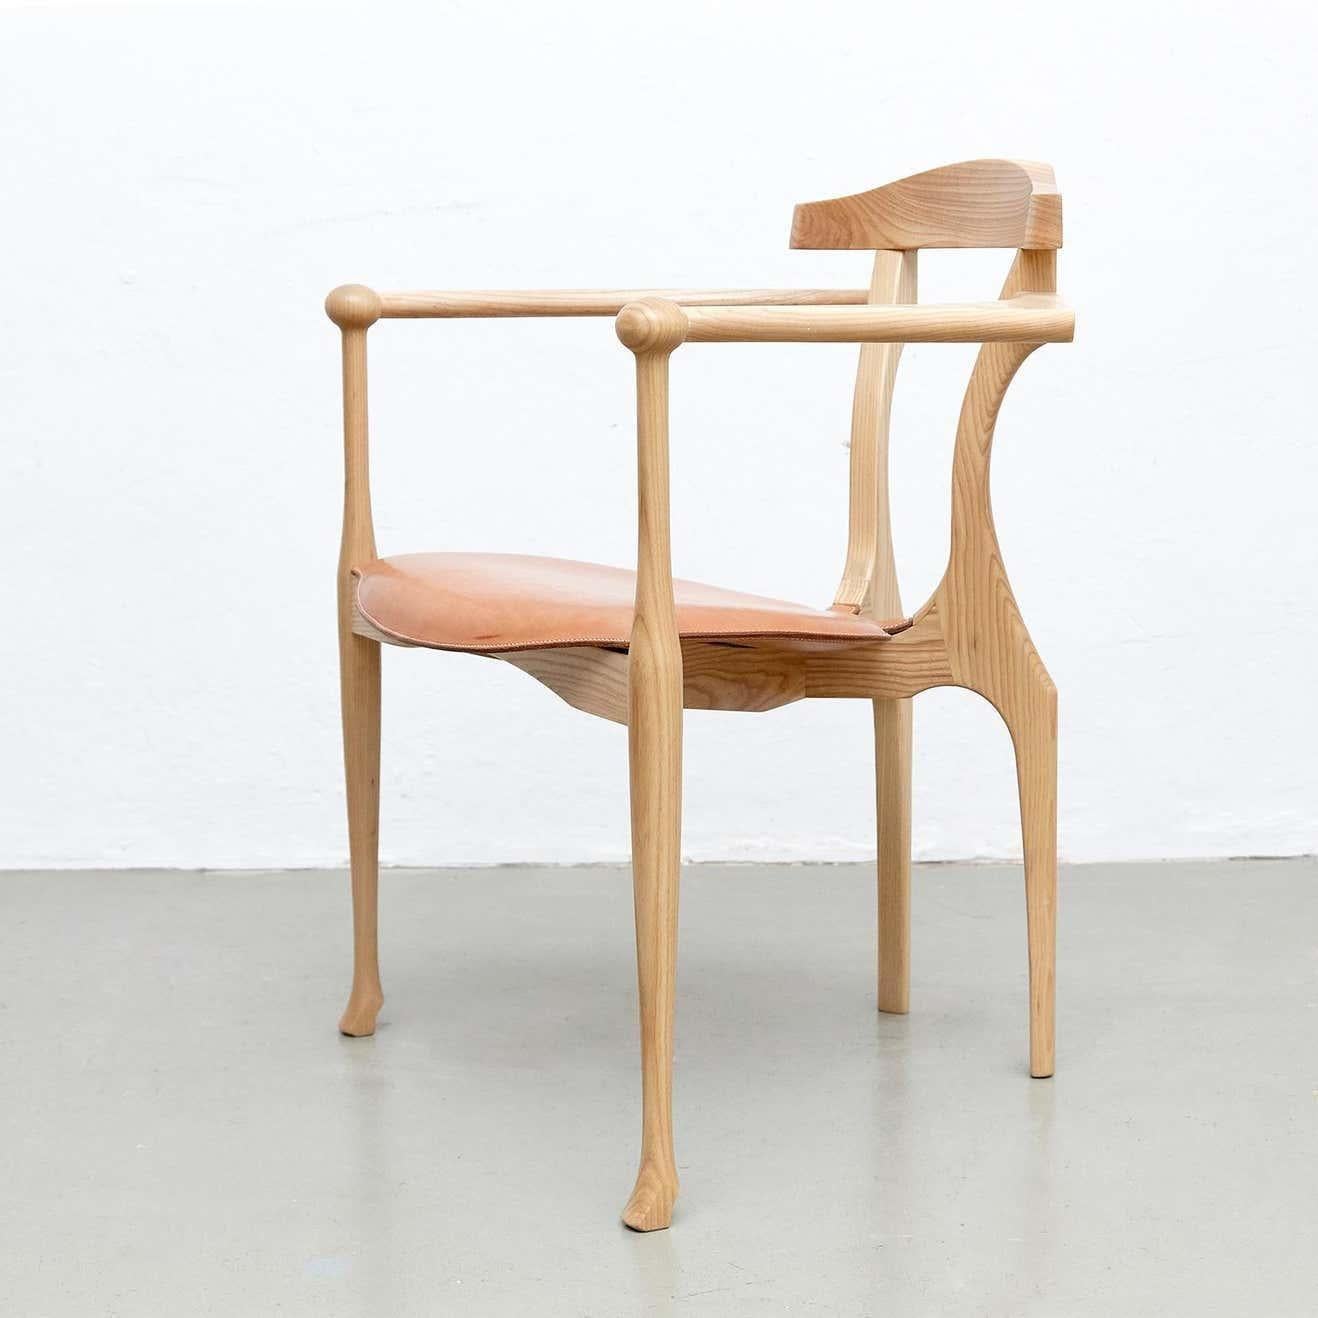 Prototyp des Sessels Gaulino, entworfen von Oscar Tusquets, hergestellt von BD barcelona design, ca. 2010.

Struktur und Rückenlehne aus Holz, Sitz mit Lederbezug.

In gutem Originalzustand mit geringen alters- und gebrauchsbedingten